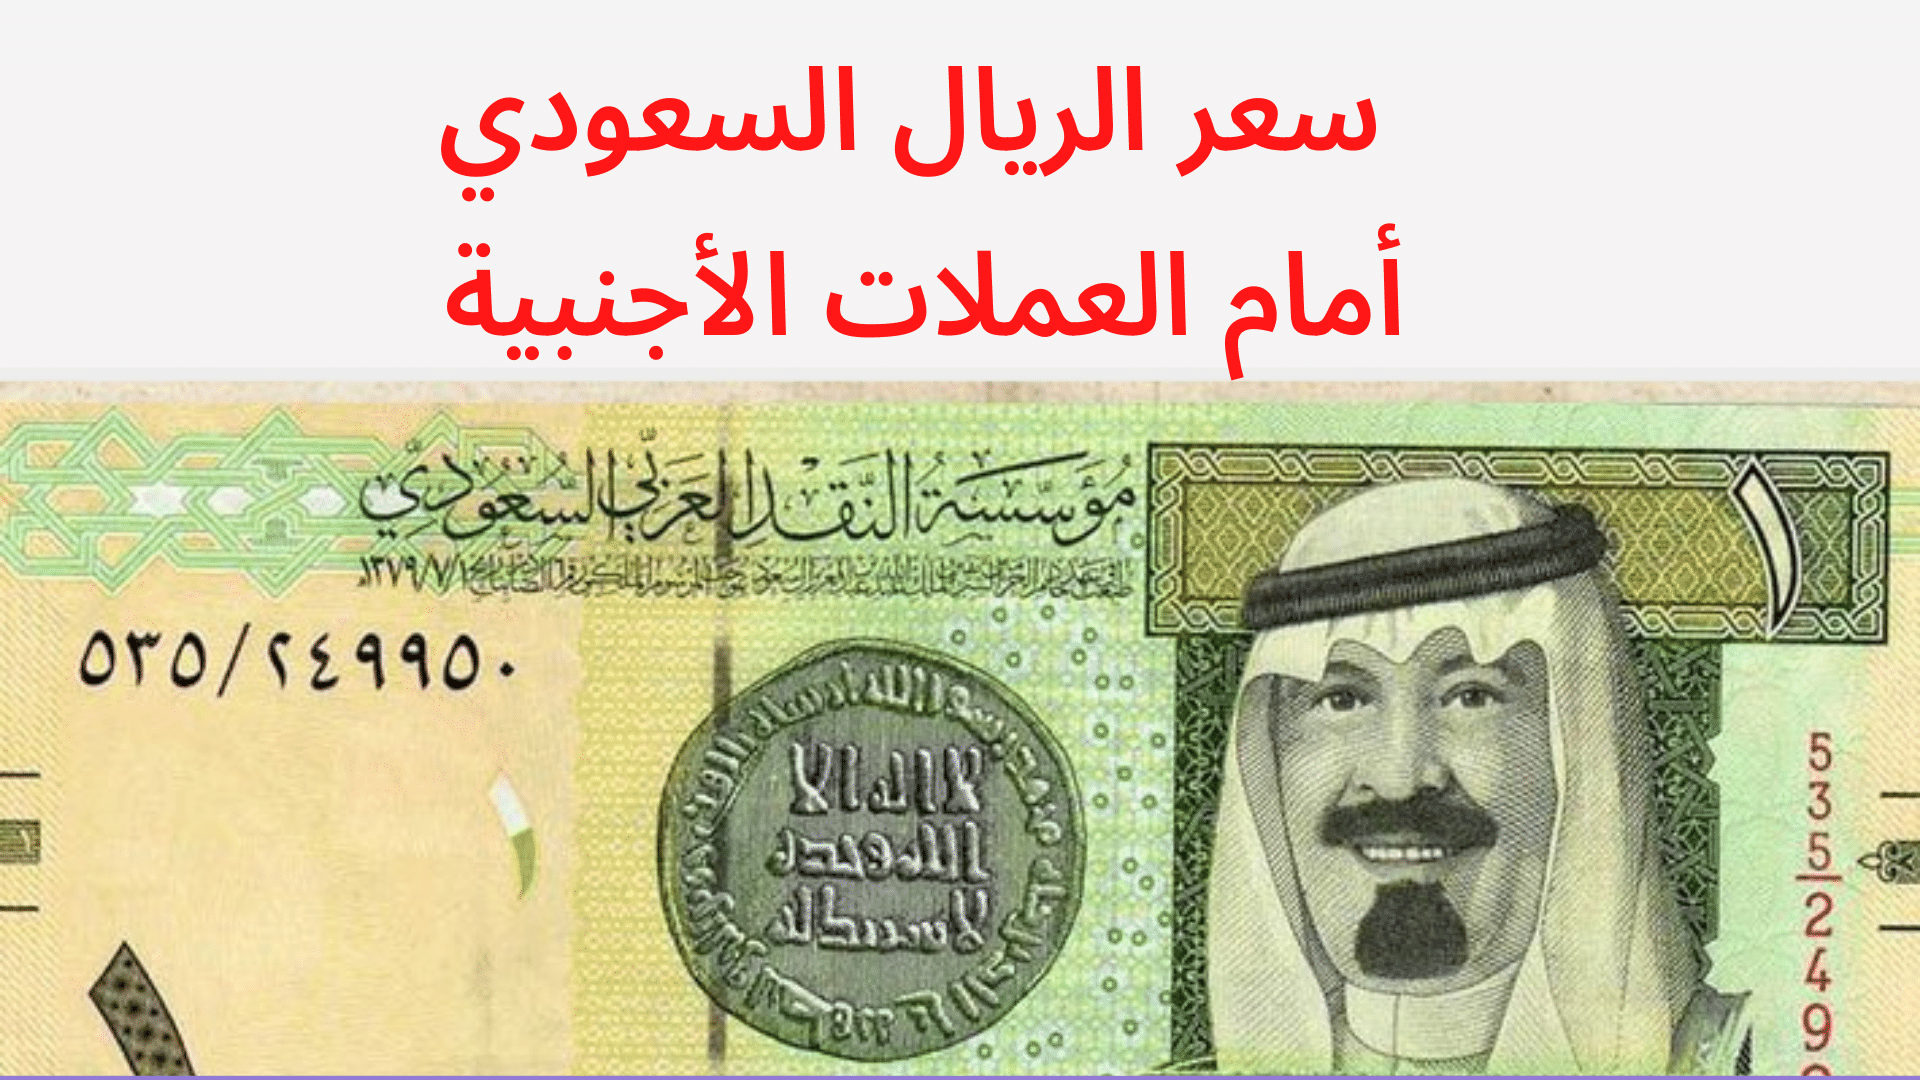 Реал саудовской аравии к рублю. Саудия деньги. Саудовский риал. Банкноты Саудовской Аравии. Картинки денег Саудовской Аравией.